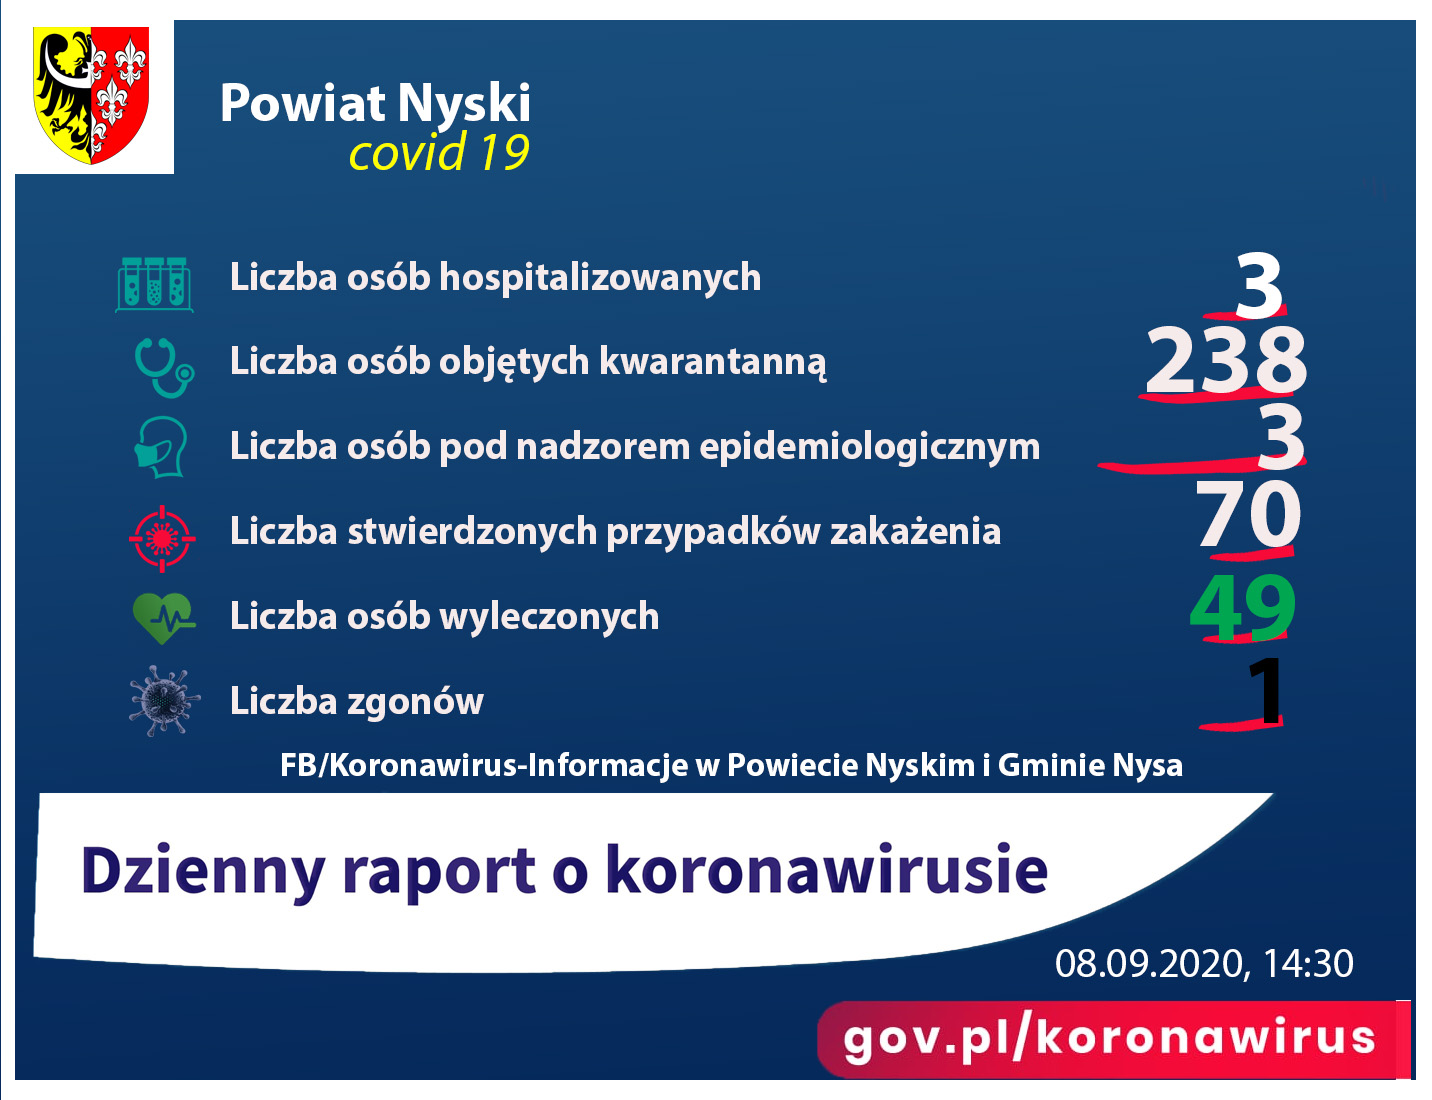 Raport przedstawia liczbę osób zakażonych koronawirusem, hospitalizowanych.